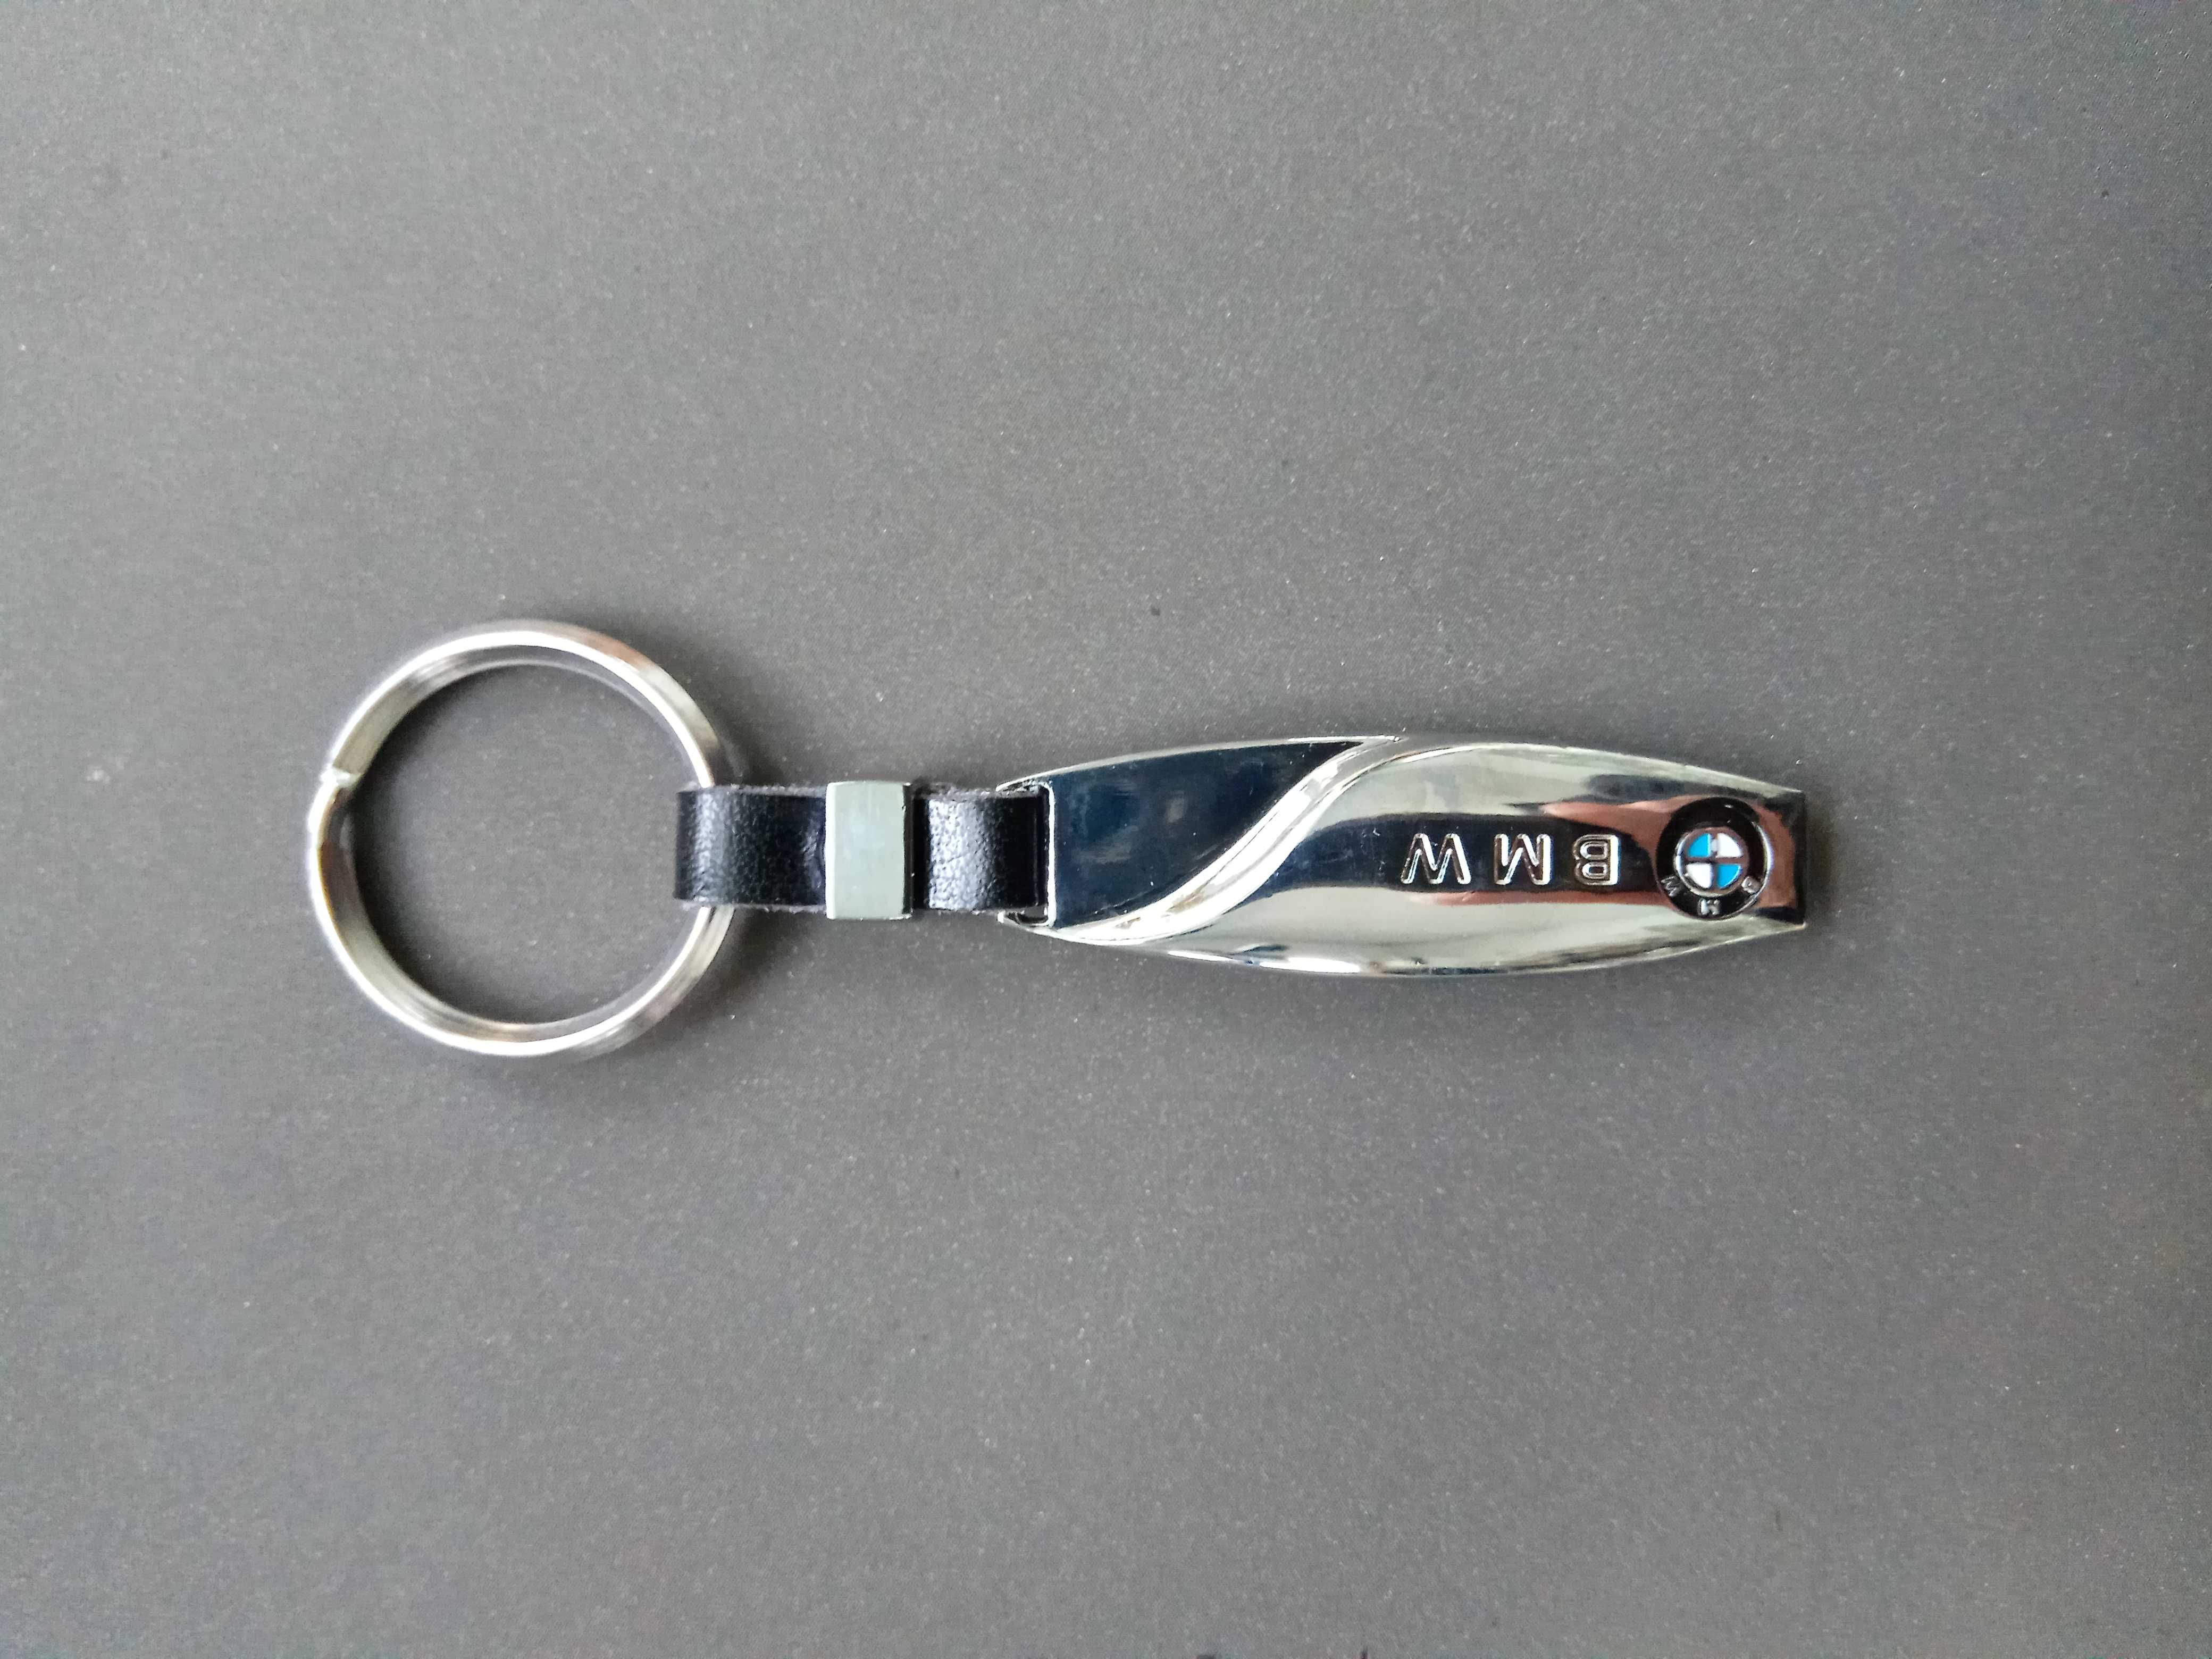 Стильный брелок для ключей с логотипом марки автомобиля.